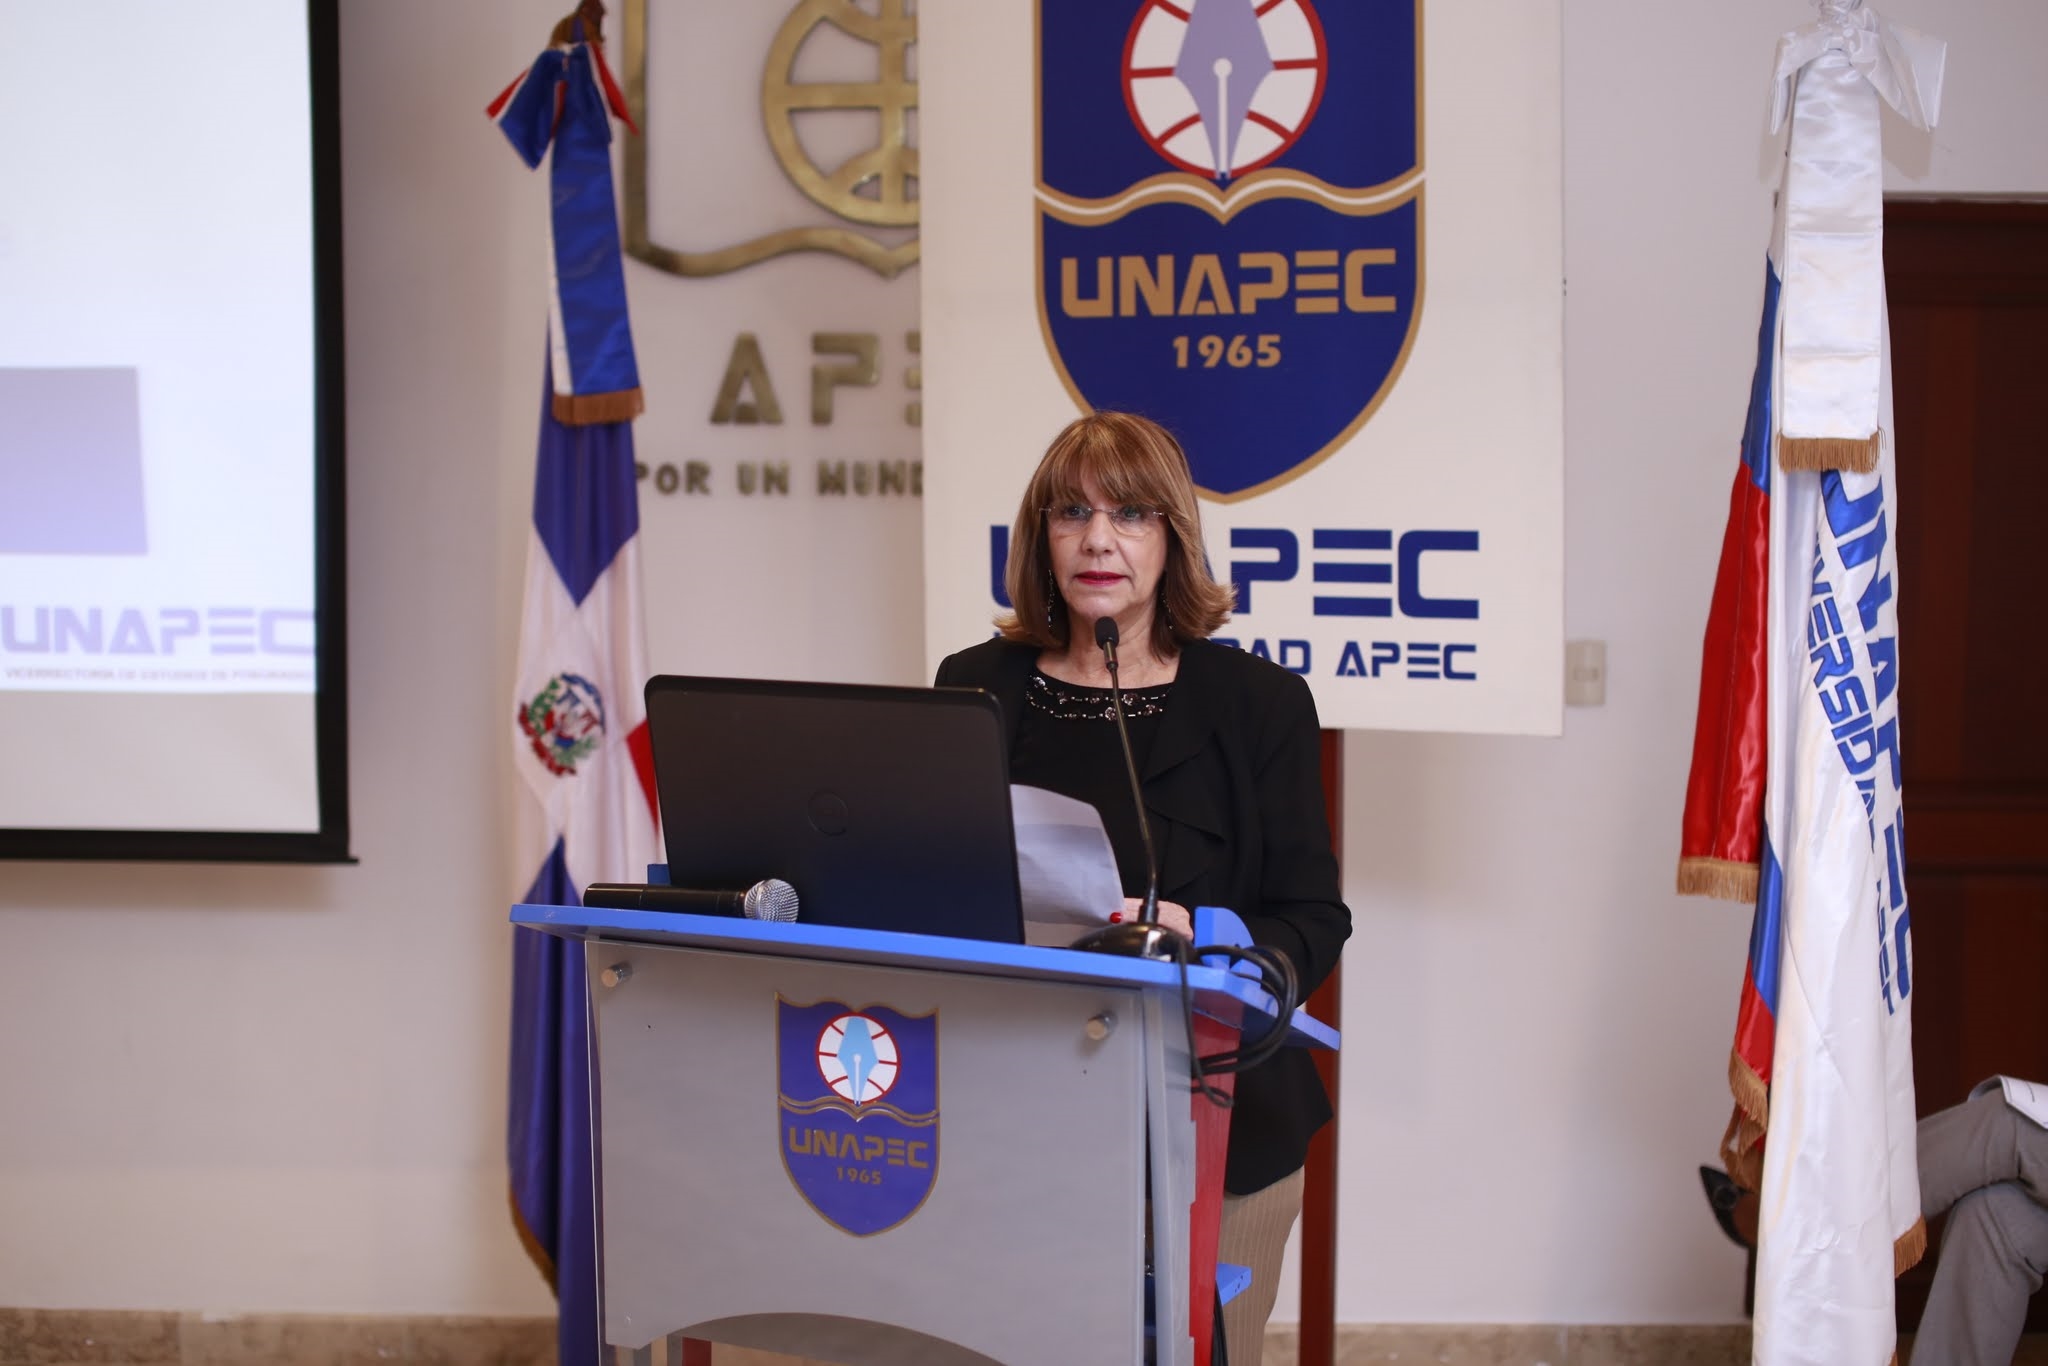 Acelis Ángeles, docente de UNAPEC quien tuvo a su cargo la presentación de la conferencia del Lic. Schoenhals